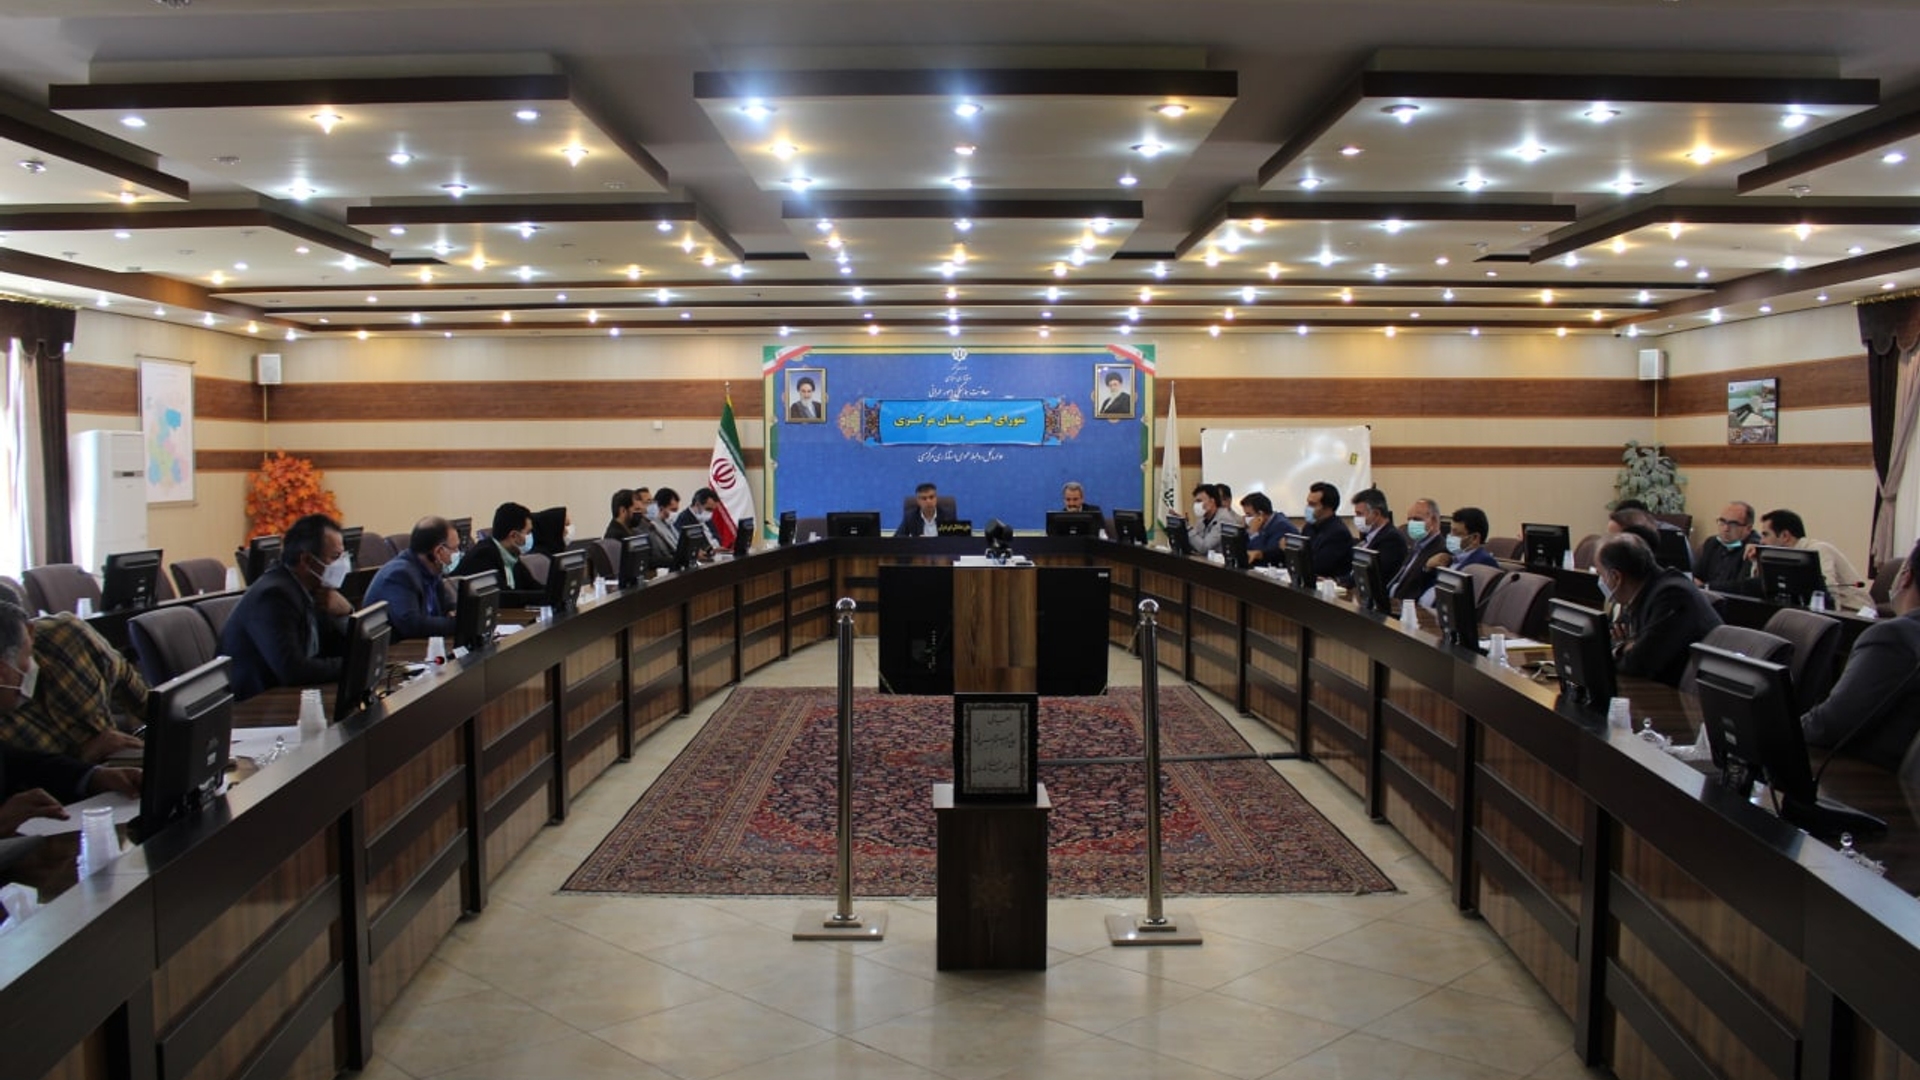 جلسه شورای فنی استان مرکزی برگزار گردید.